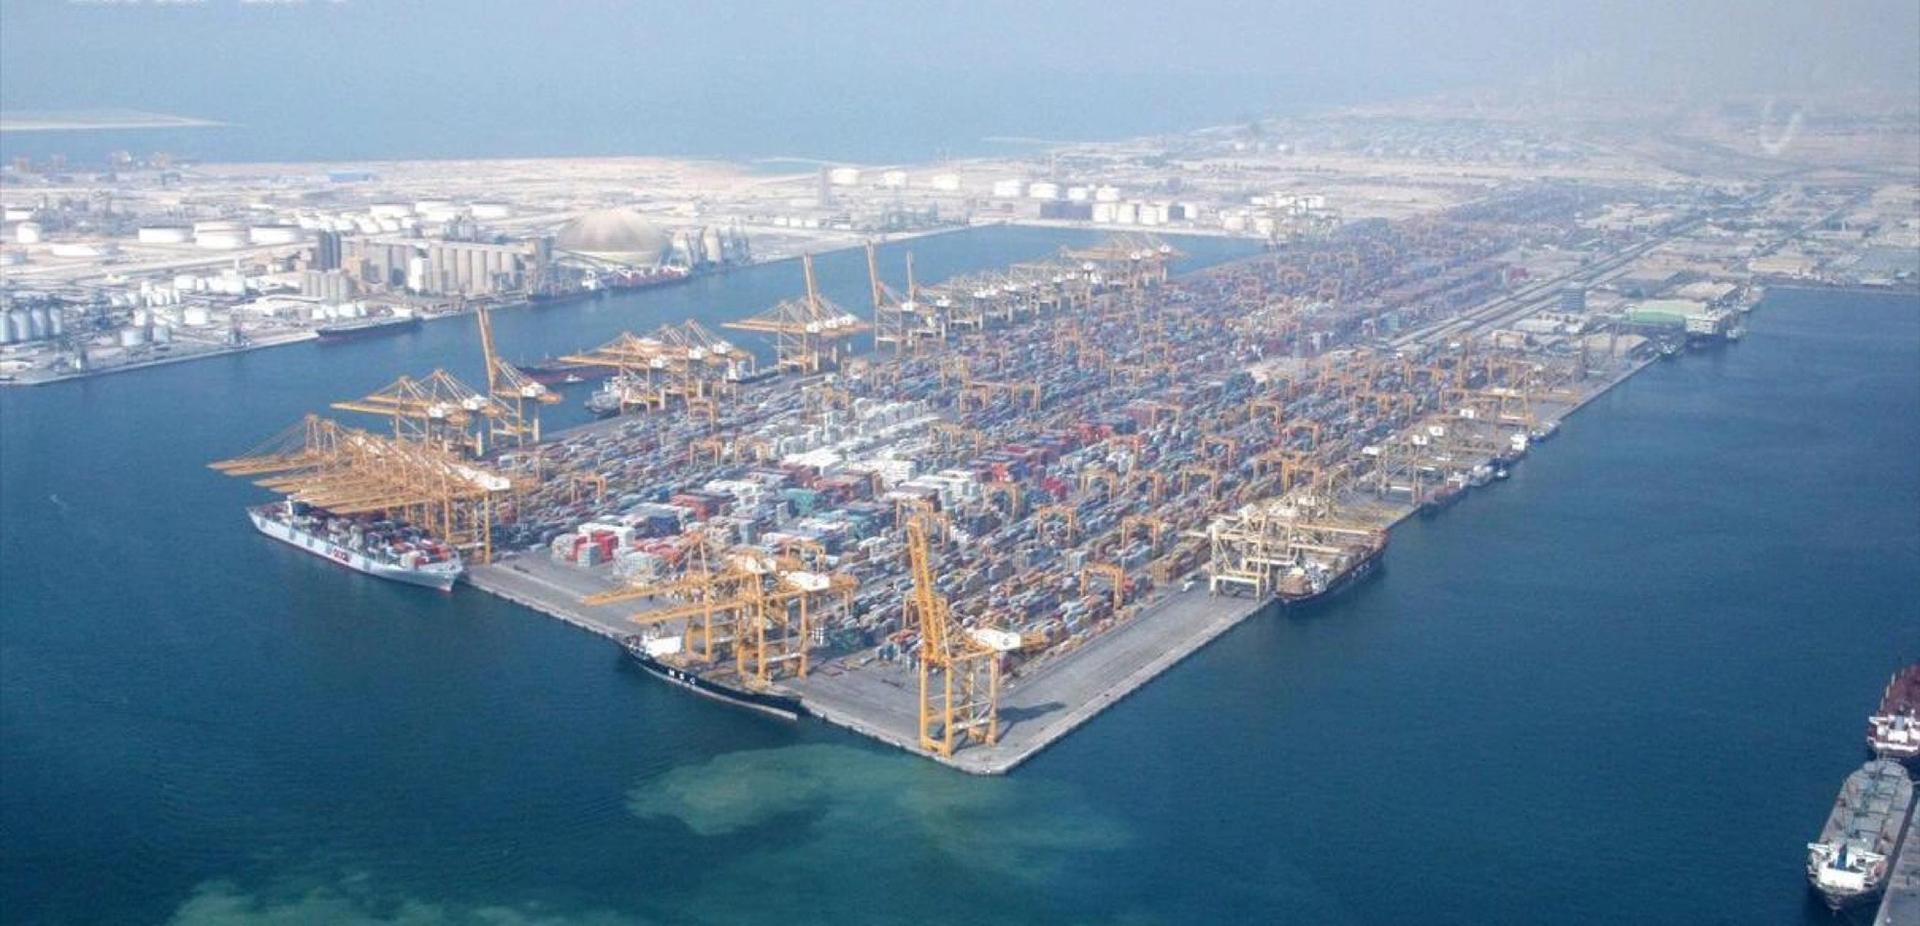 Jebel Ali Port, Dubai